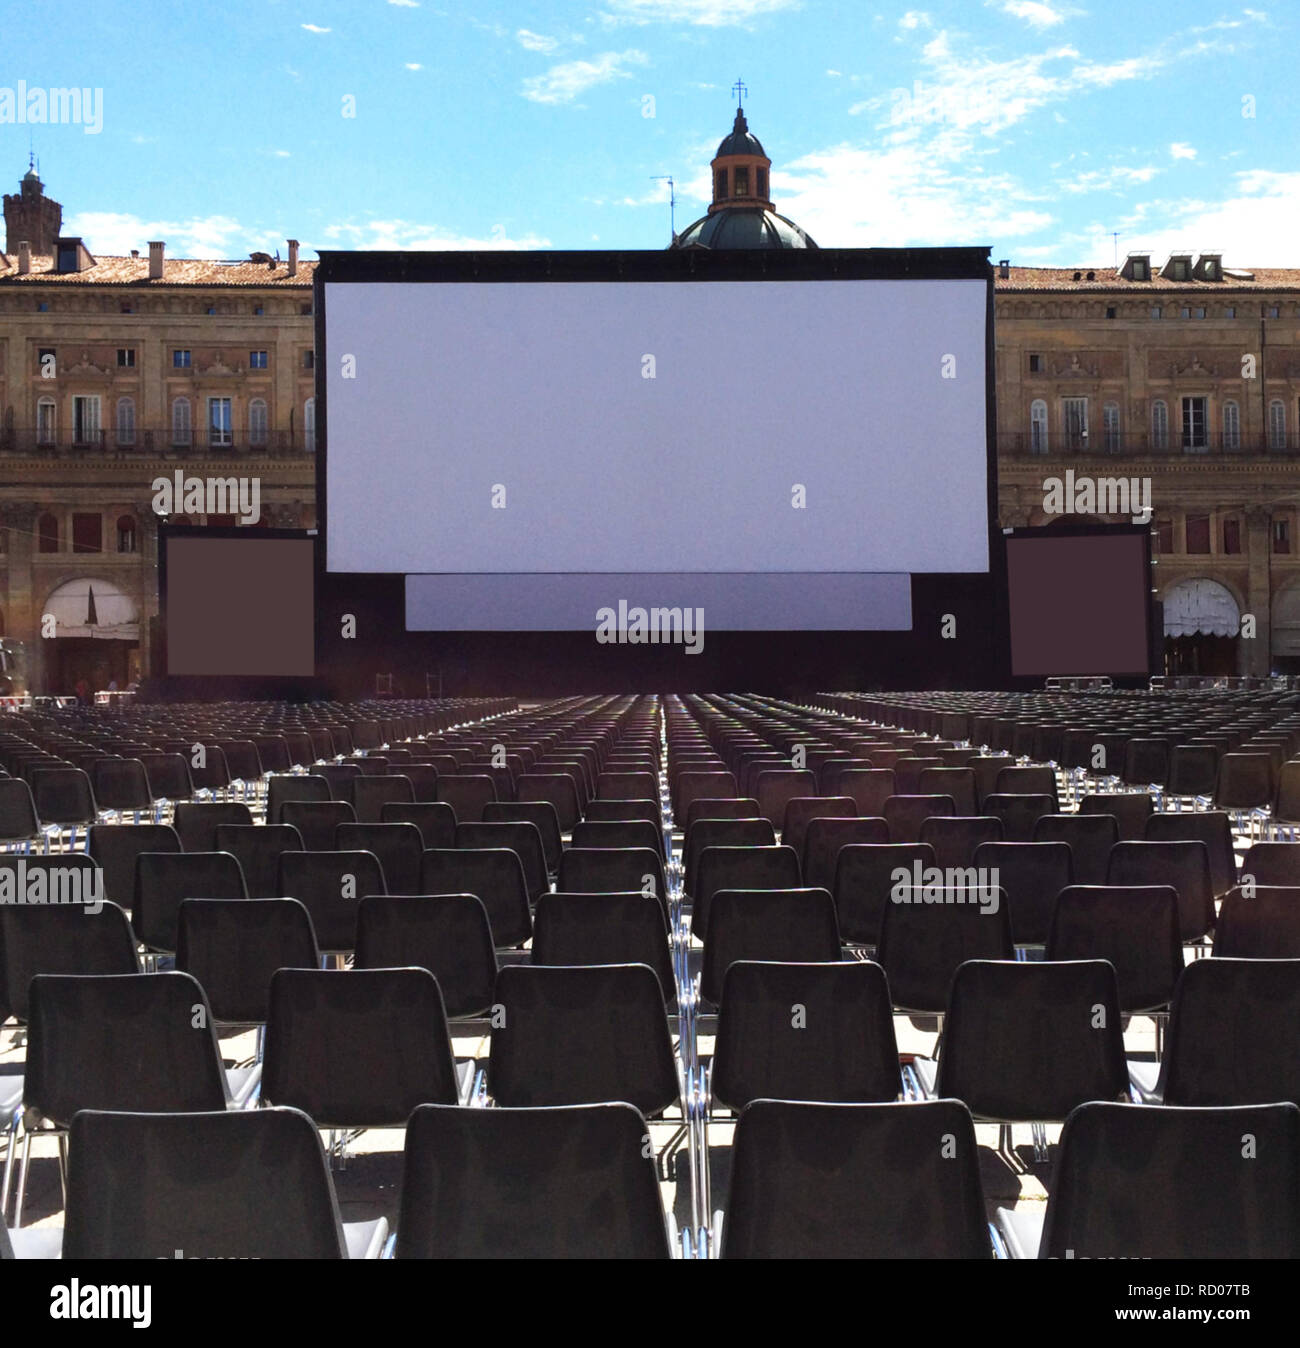 Cinéma en plein air avec écran de projection blanc, la Piazza Maggiore à Bologne, Italie Banque D'Images